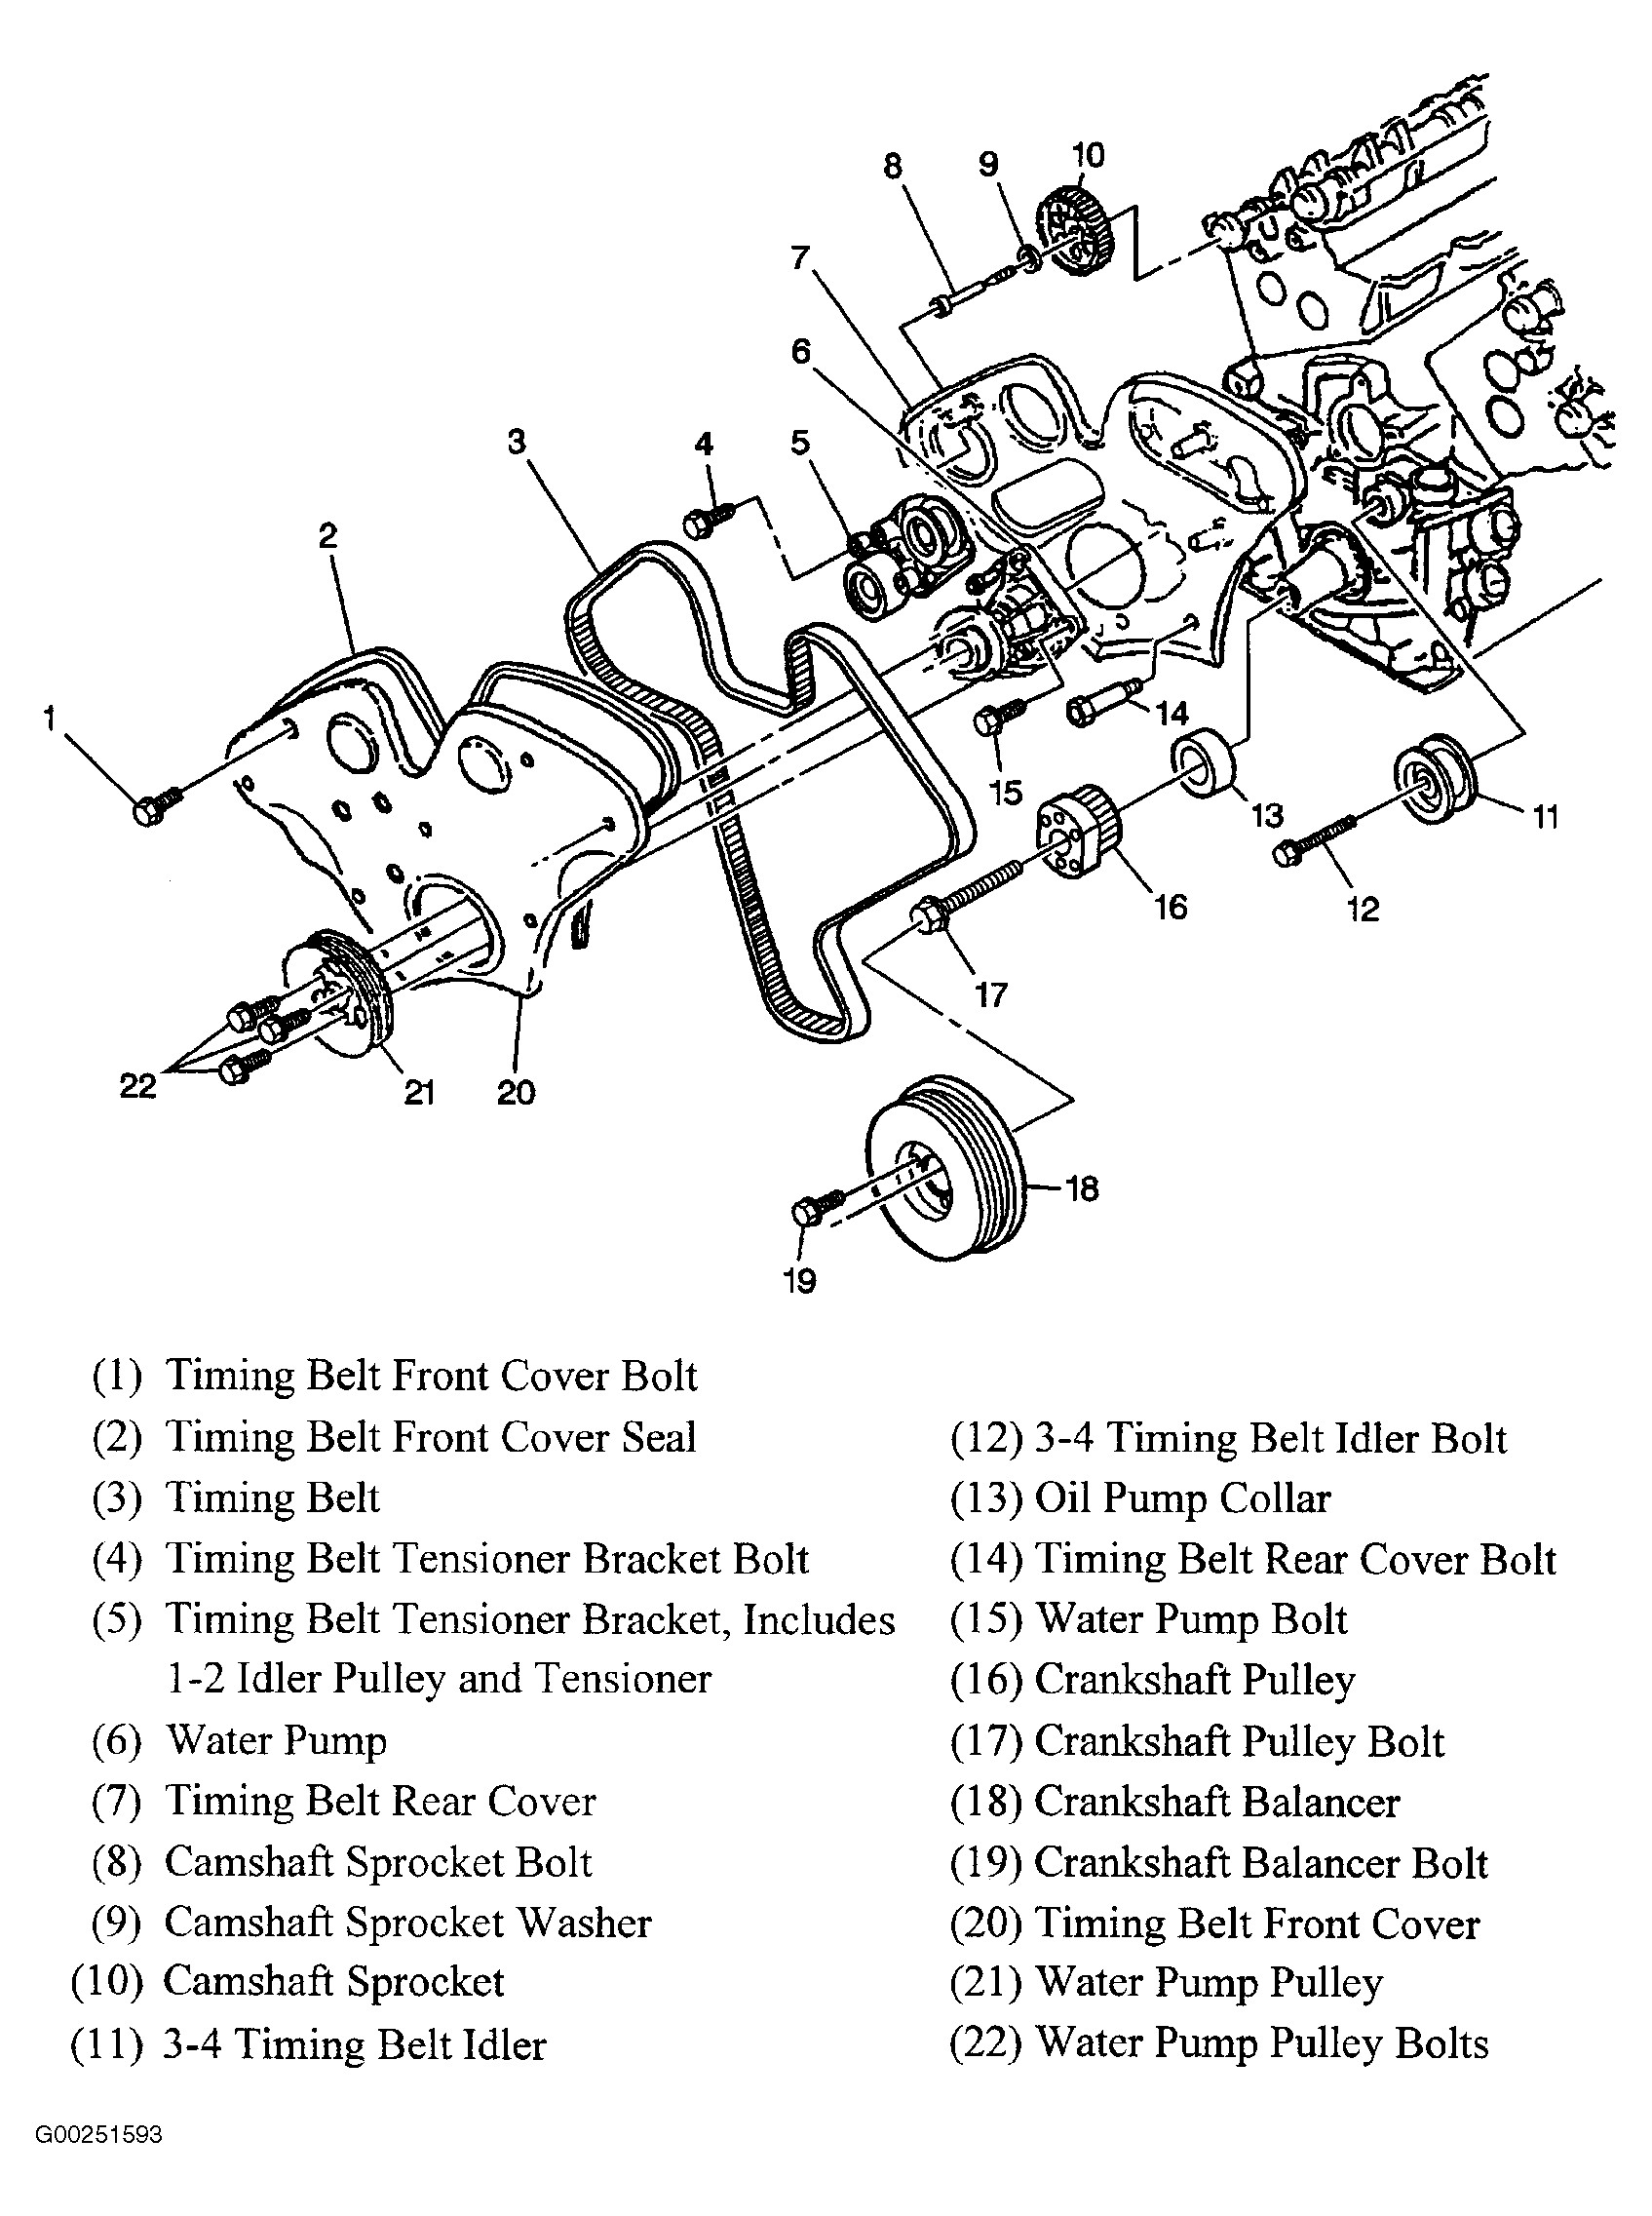 Automobile Body Parts Diagram 2003 Cadillac Cts Serpentine Belt Diagram Auto Of Automobile Body Parts Diagram